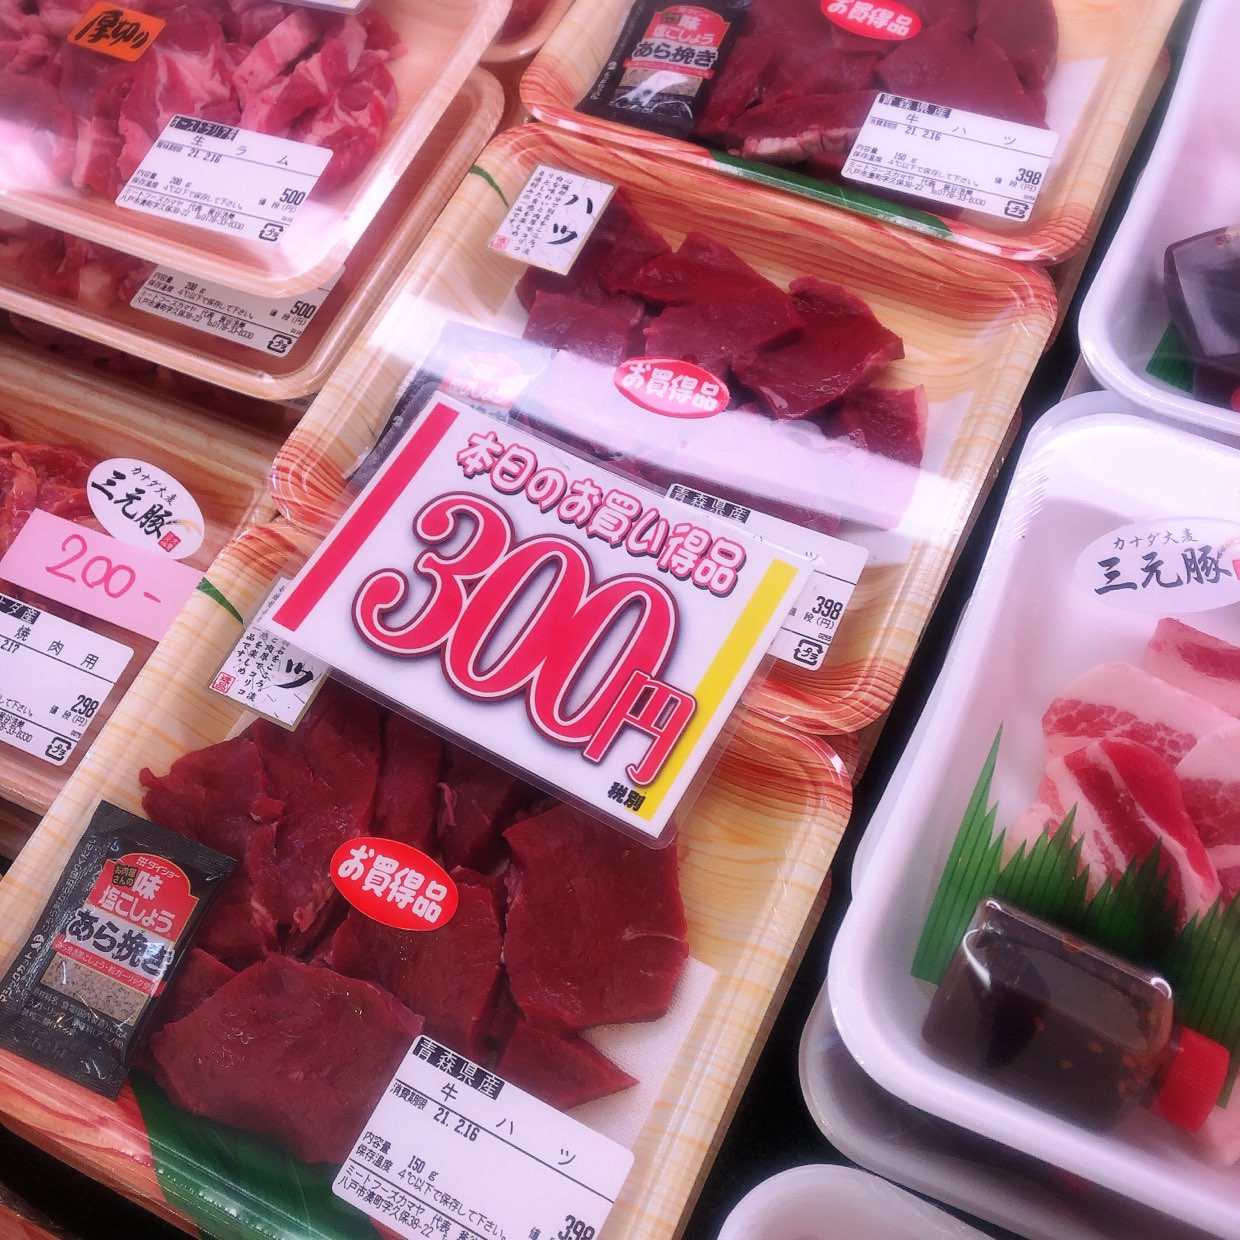 本日は青森県産牛ハツ焼肉用がお買得です。